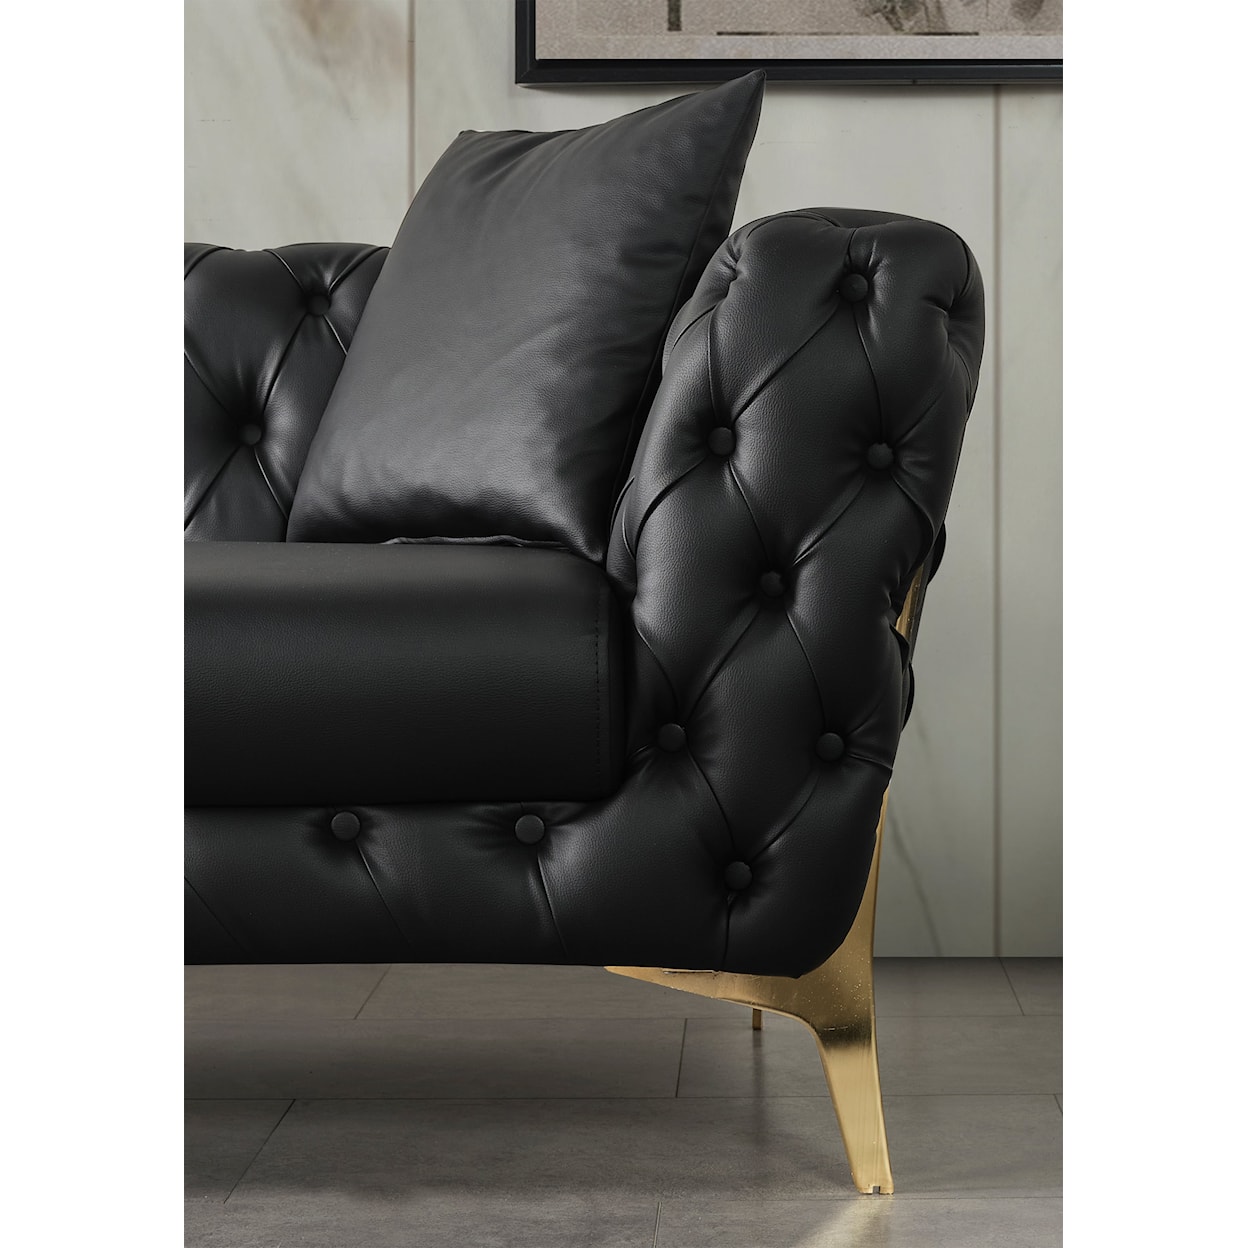 Meridian Furniture Aurora Chair